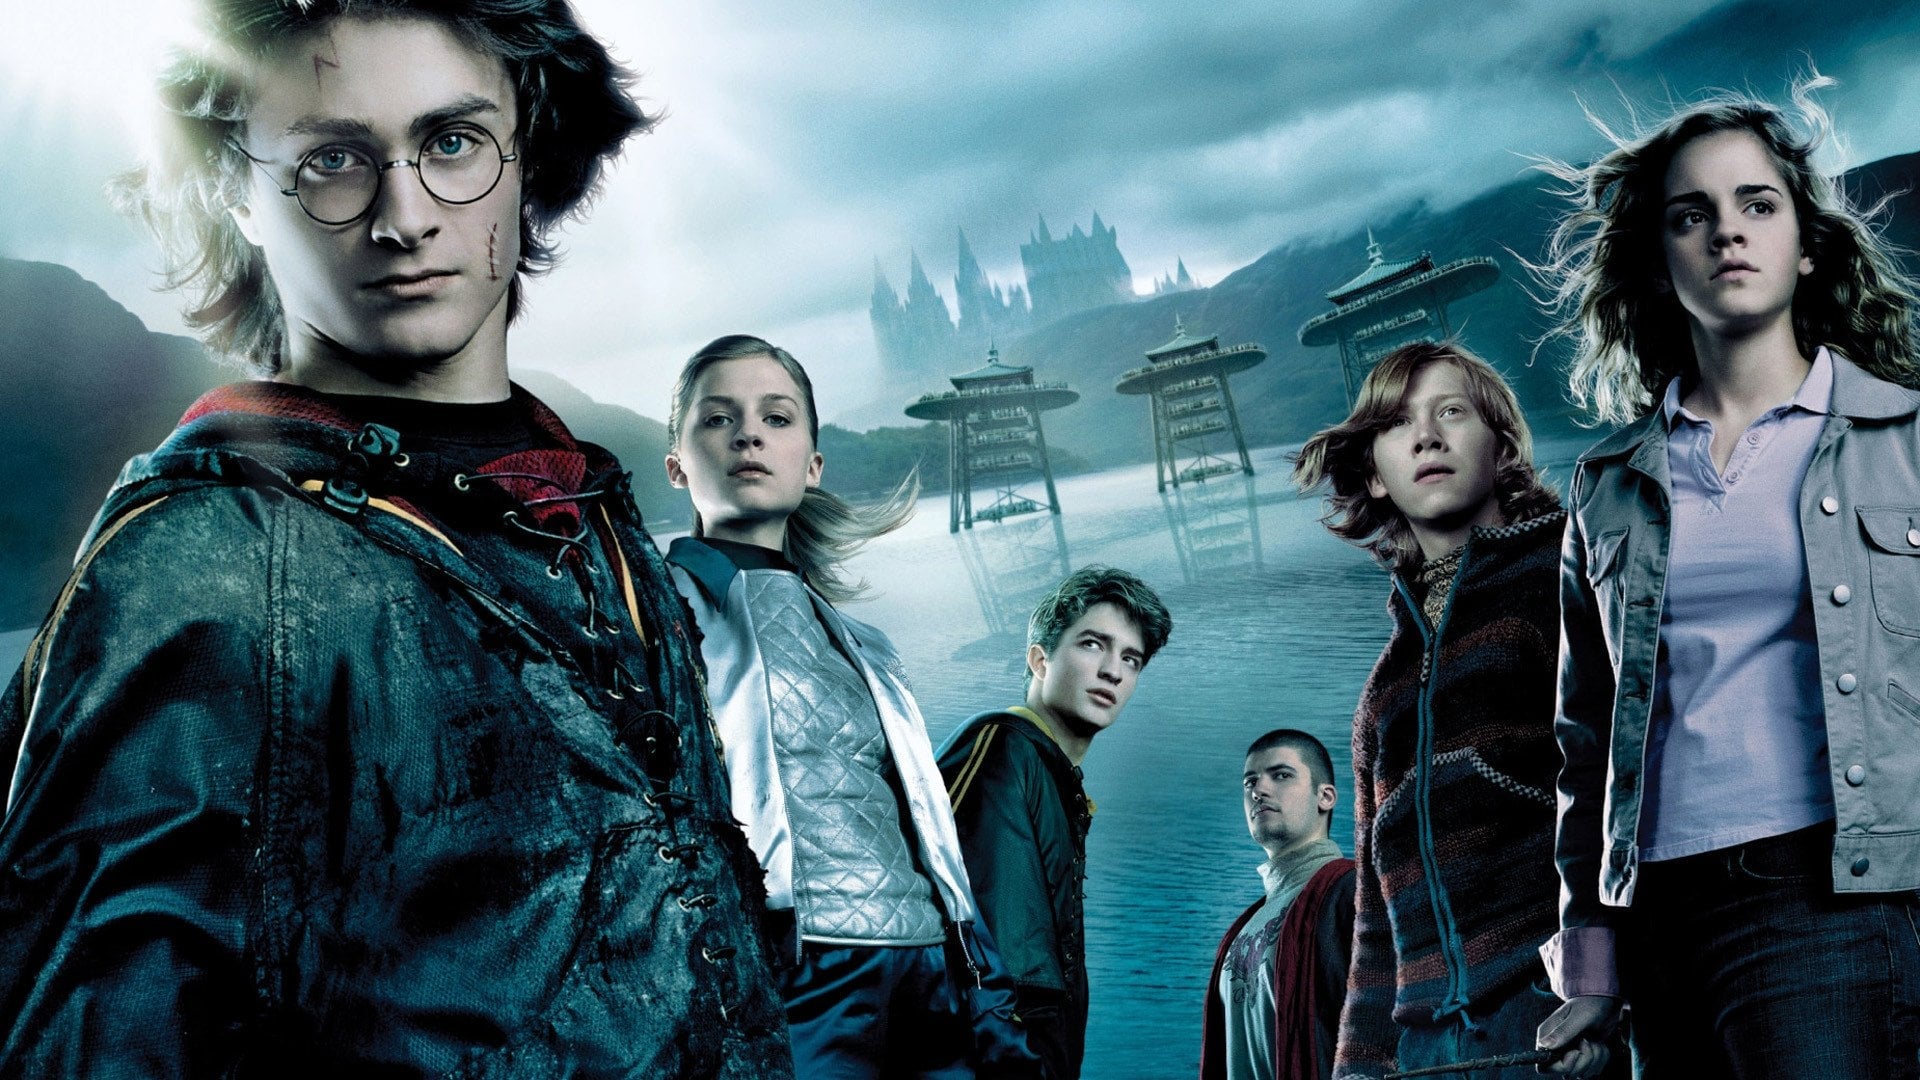 Harry Potter e il calice di fuoco (2005)